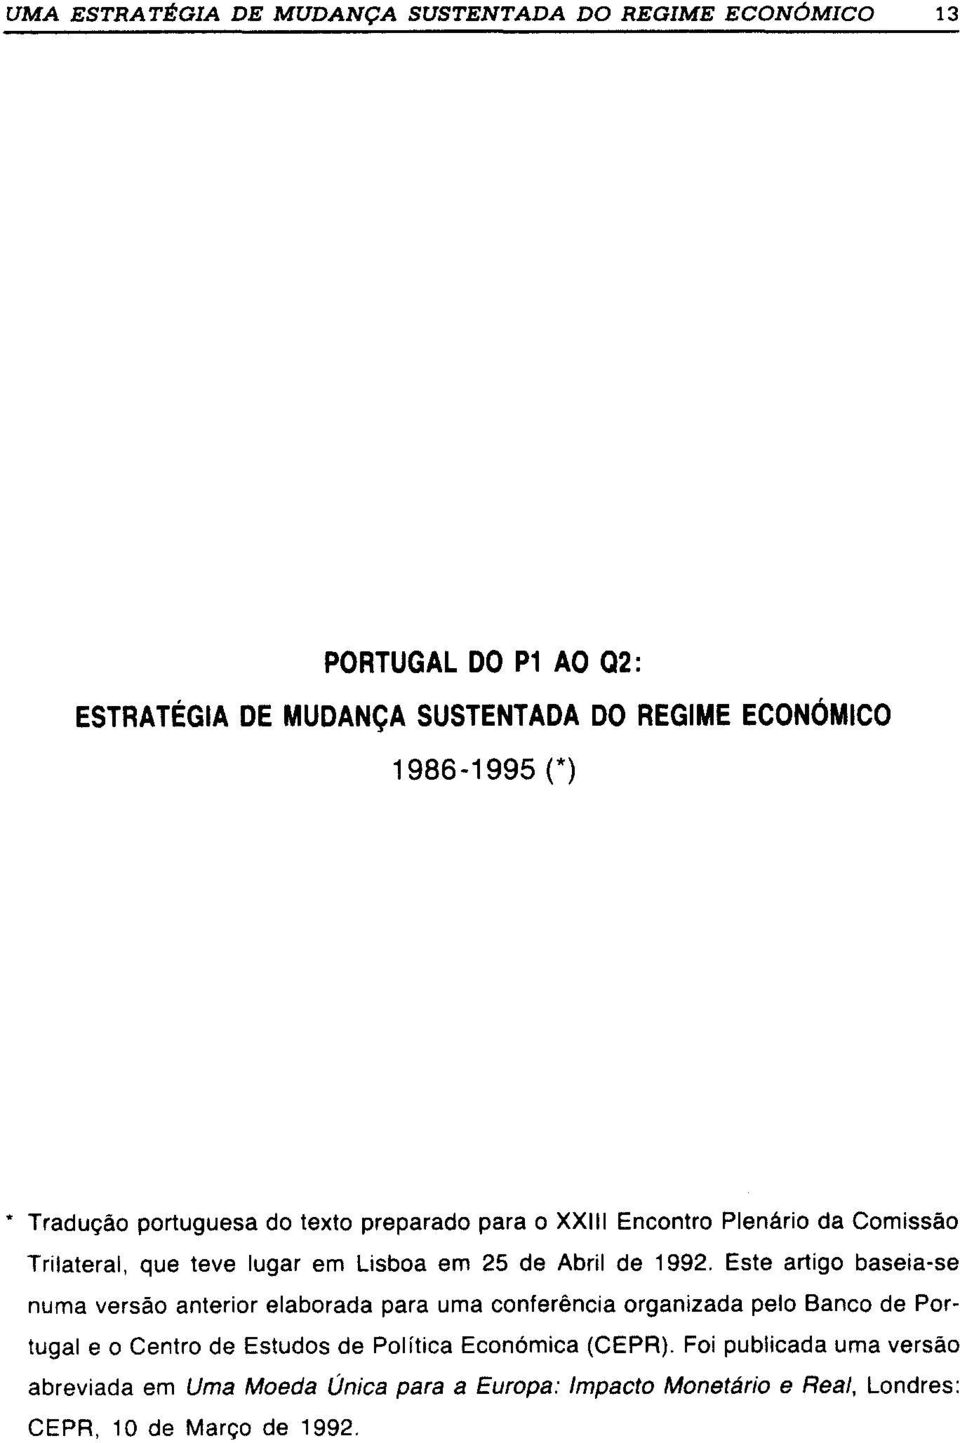 Este artigo baseia-se numa versão anterior elaborada para uma conferência organizada pelo Banco de Portugal e o Centro de Estudos